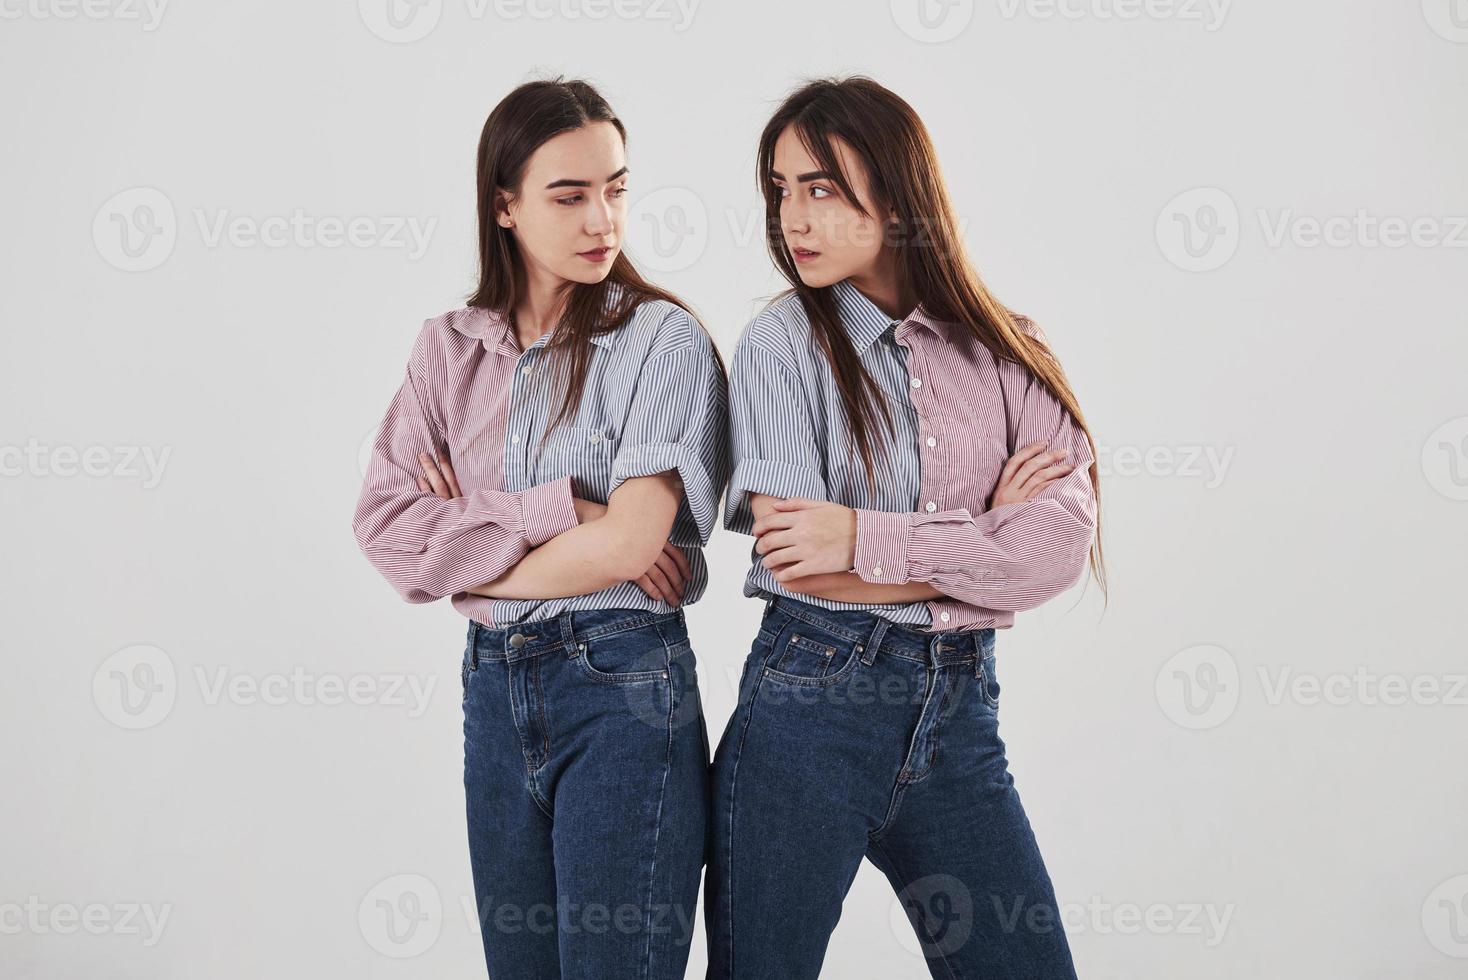 beledigd en kijk boos naar de ander. twee zussen tweeling staan en poseren in de studio met witte achtergrond foto